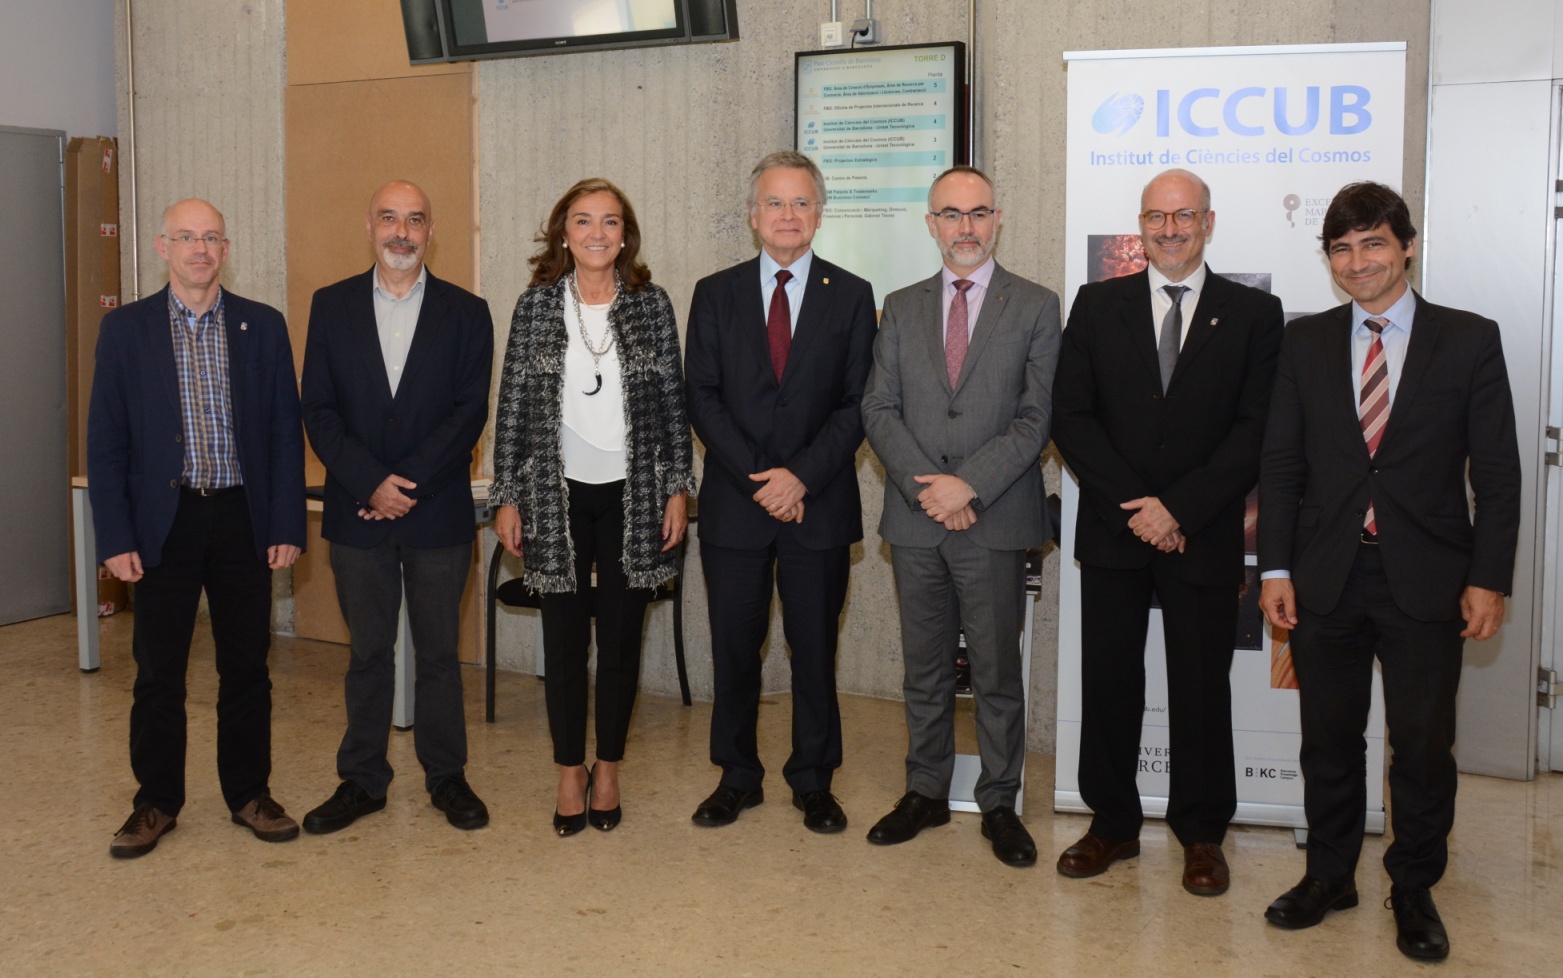 L'acte ha reunit representants de la Universitat de Barcelona, de la Secretaria d’Estat d’R+D+i i de la Secretaria d’Universitats i Recerca de la Generalitat de Catalunya.